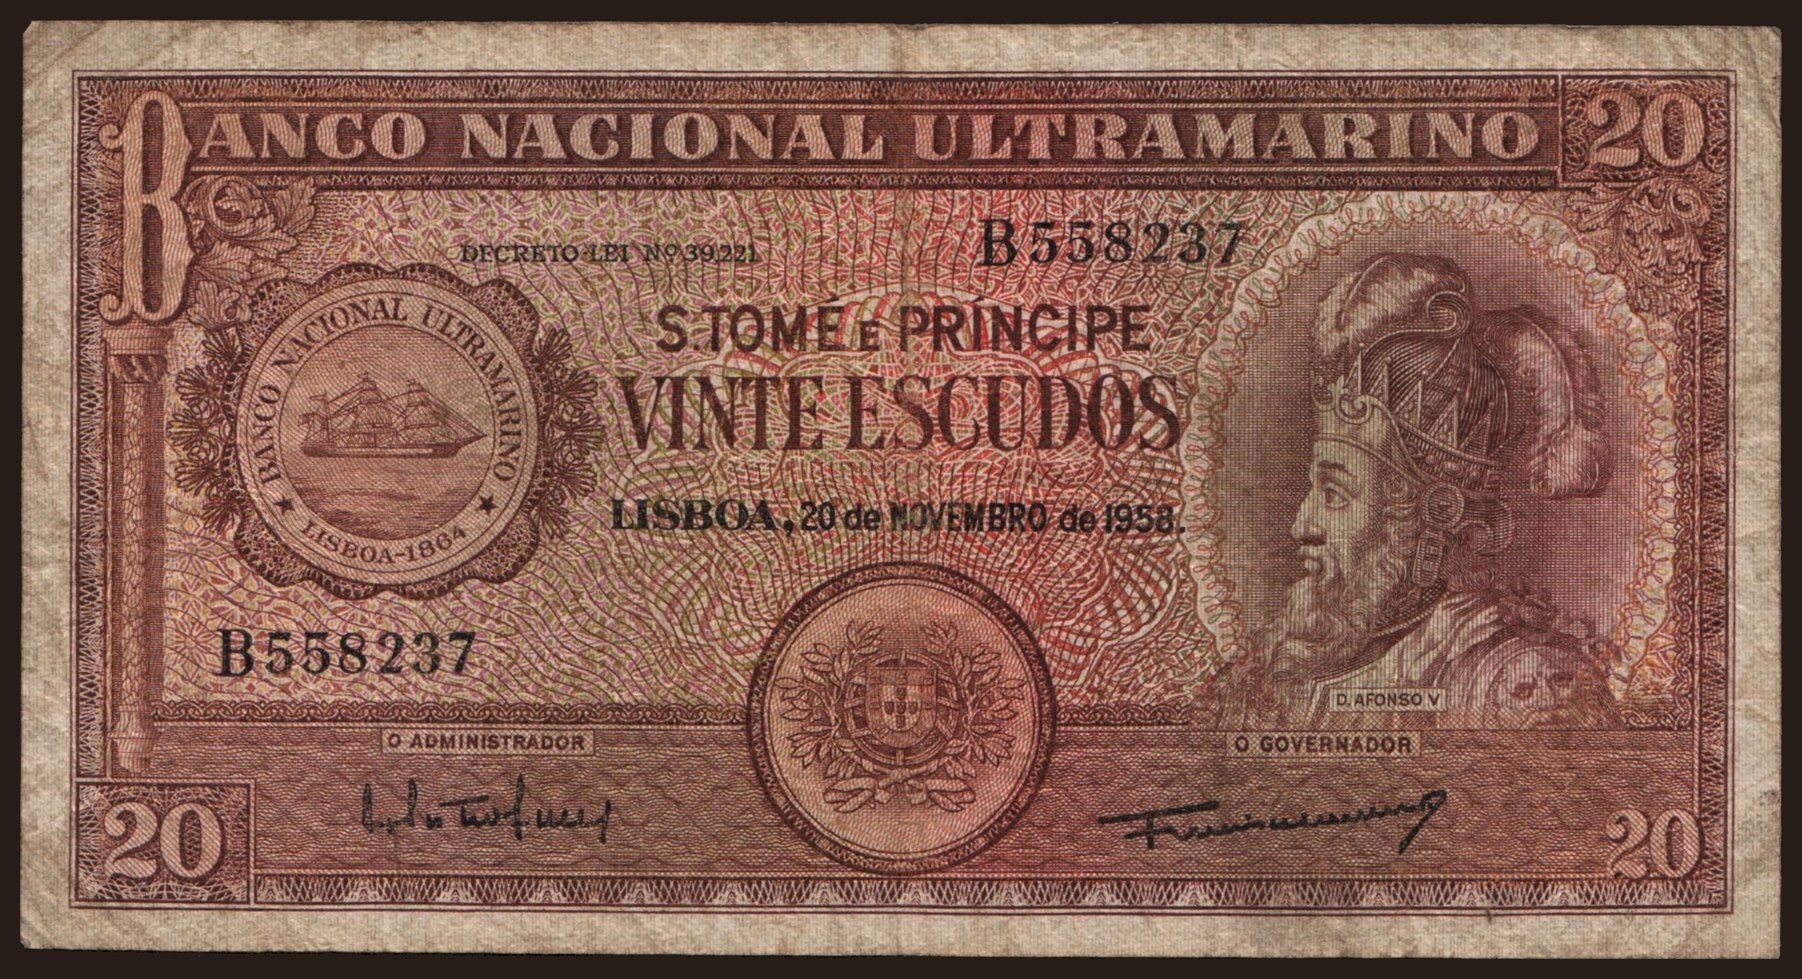 20 escudos, 1958